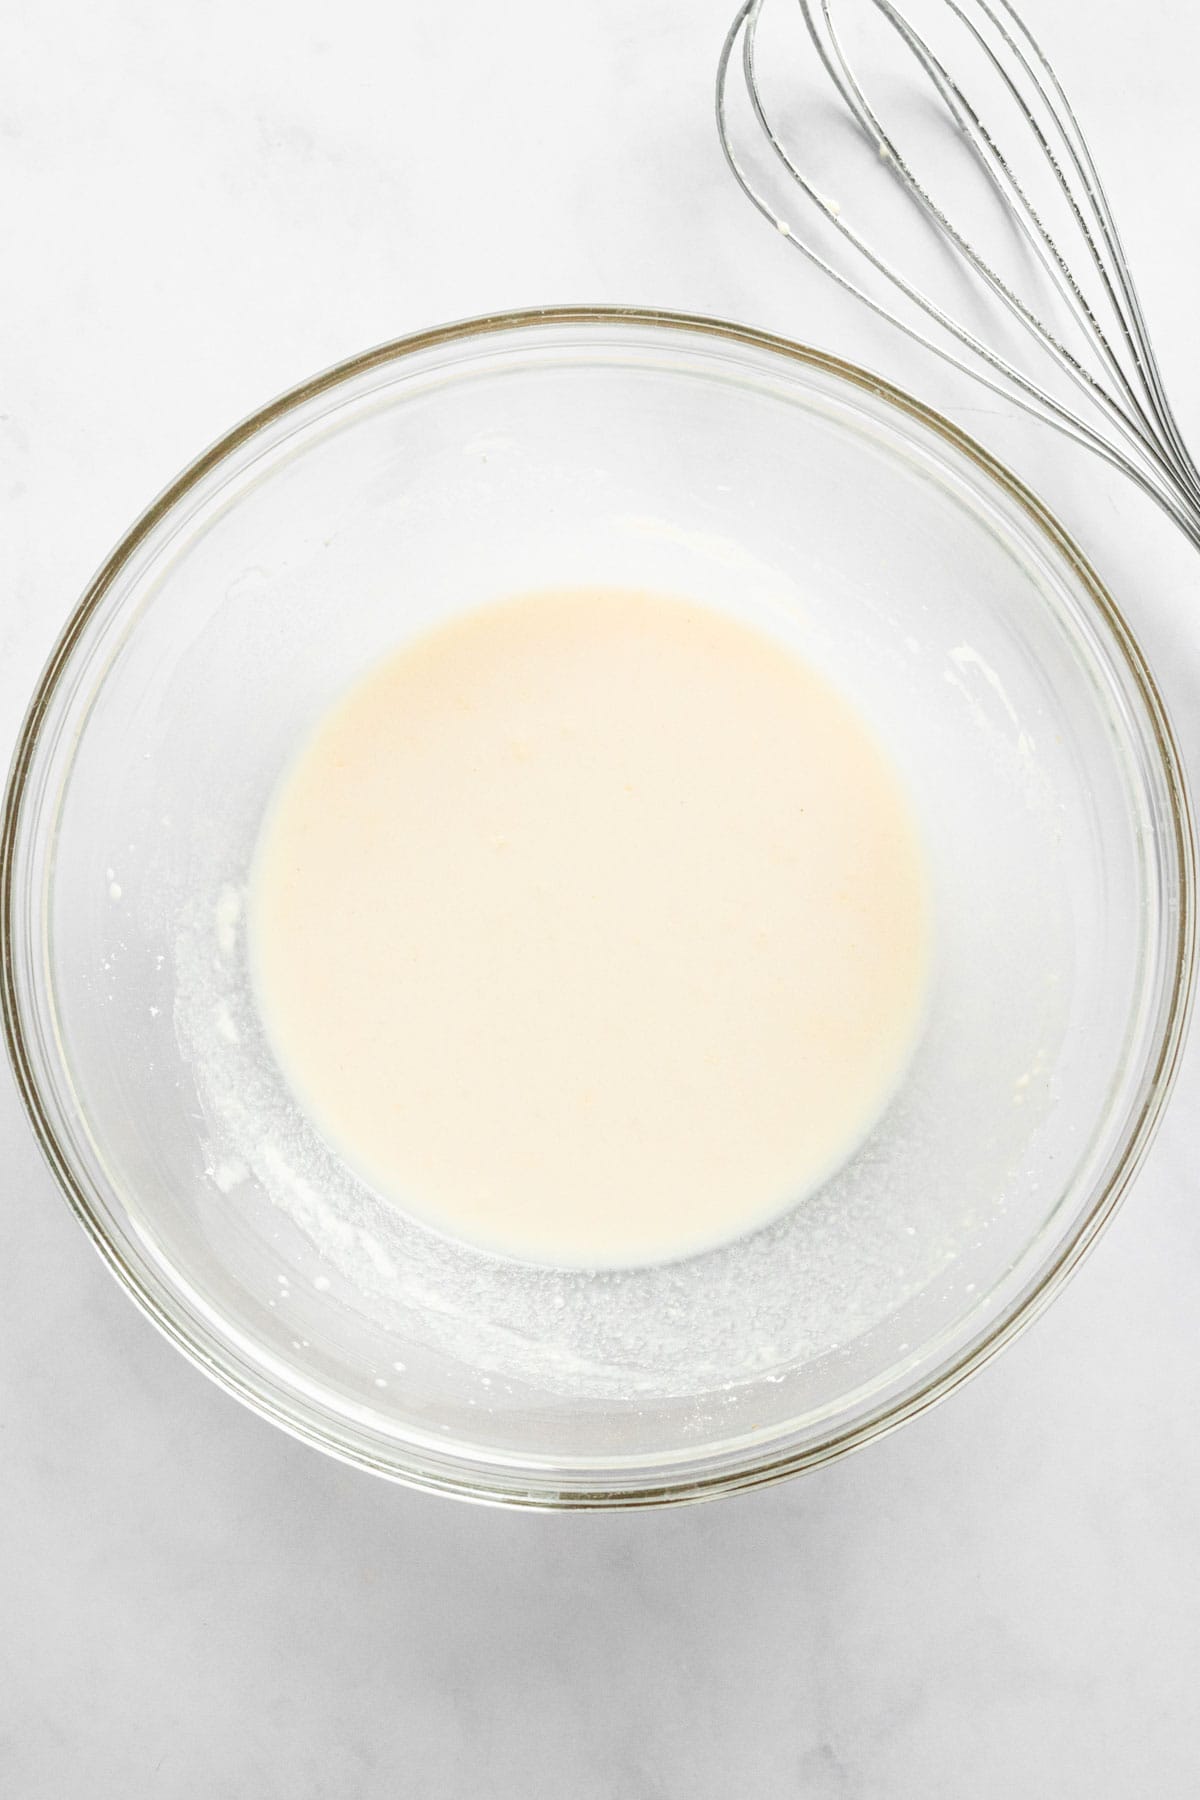 heavy cream in a bowl.